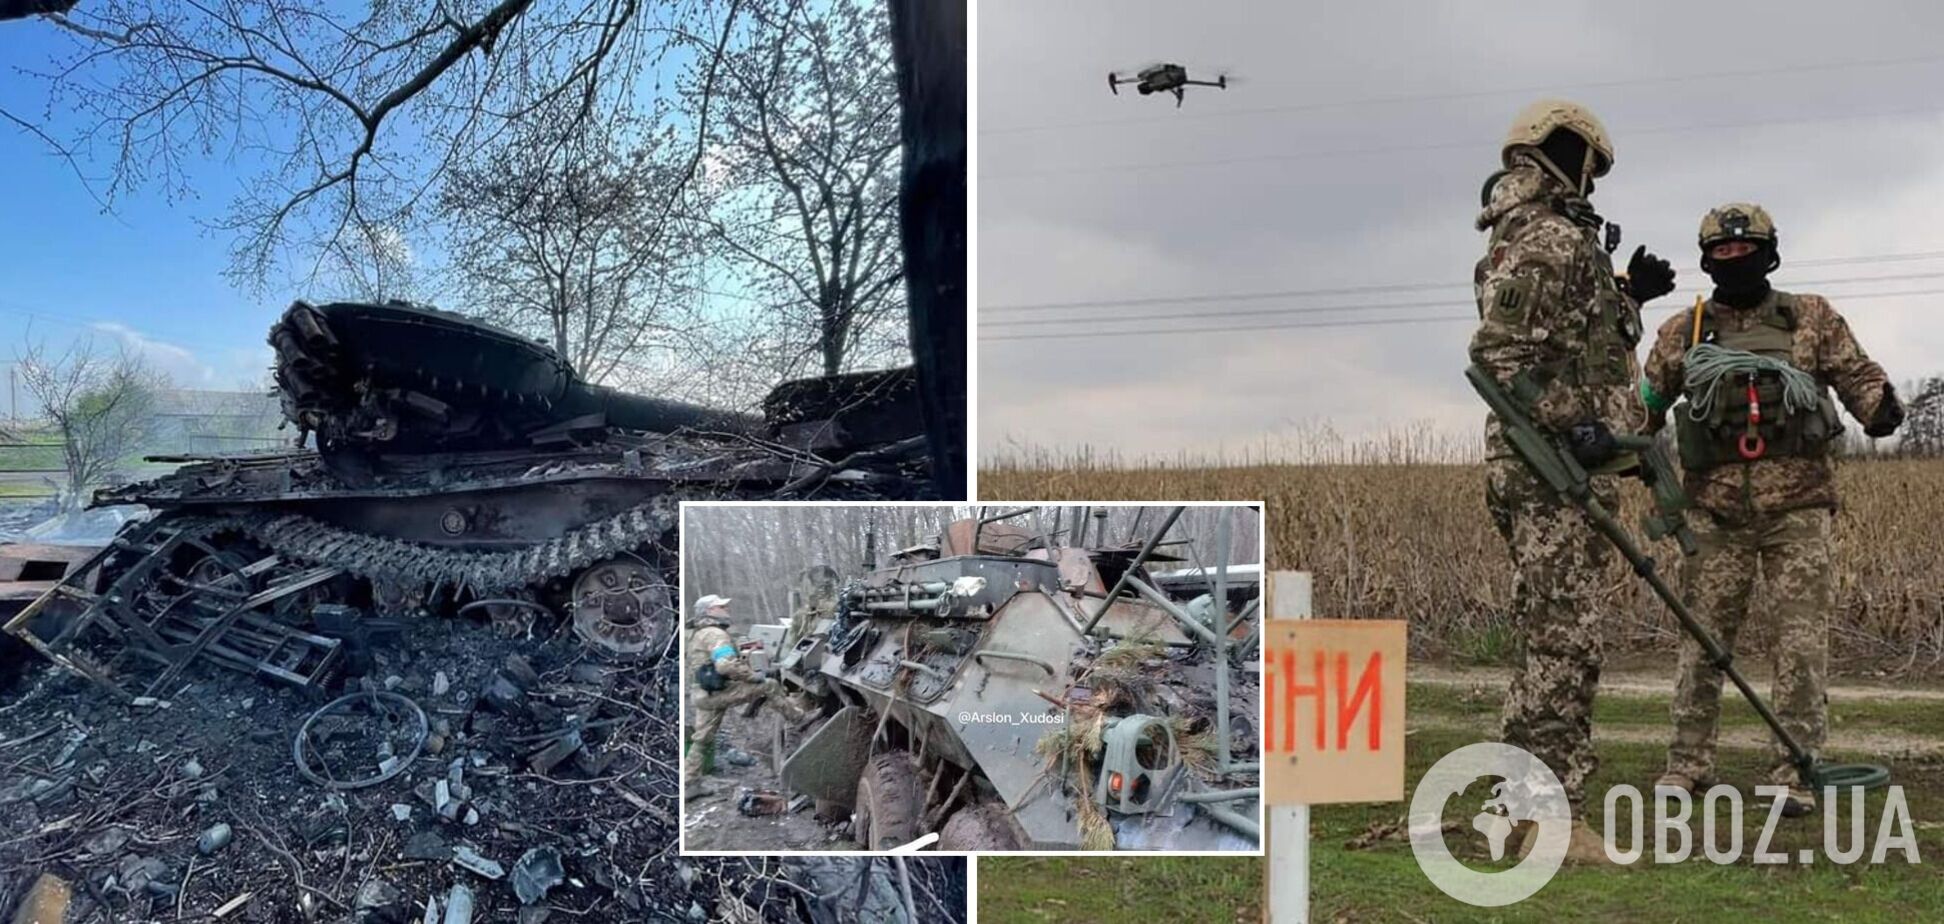 Главной целью врага остается окружение ВСУ на Донбассе, на территории Приднестровья привели в боеготовность войска РФ – Генштаб